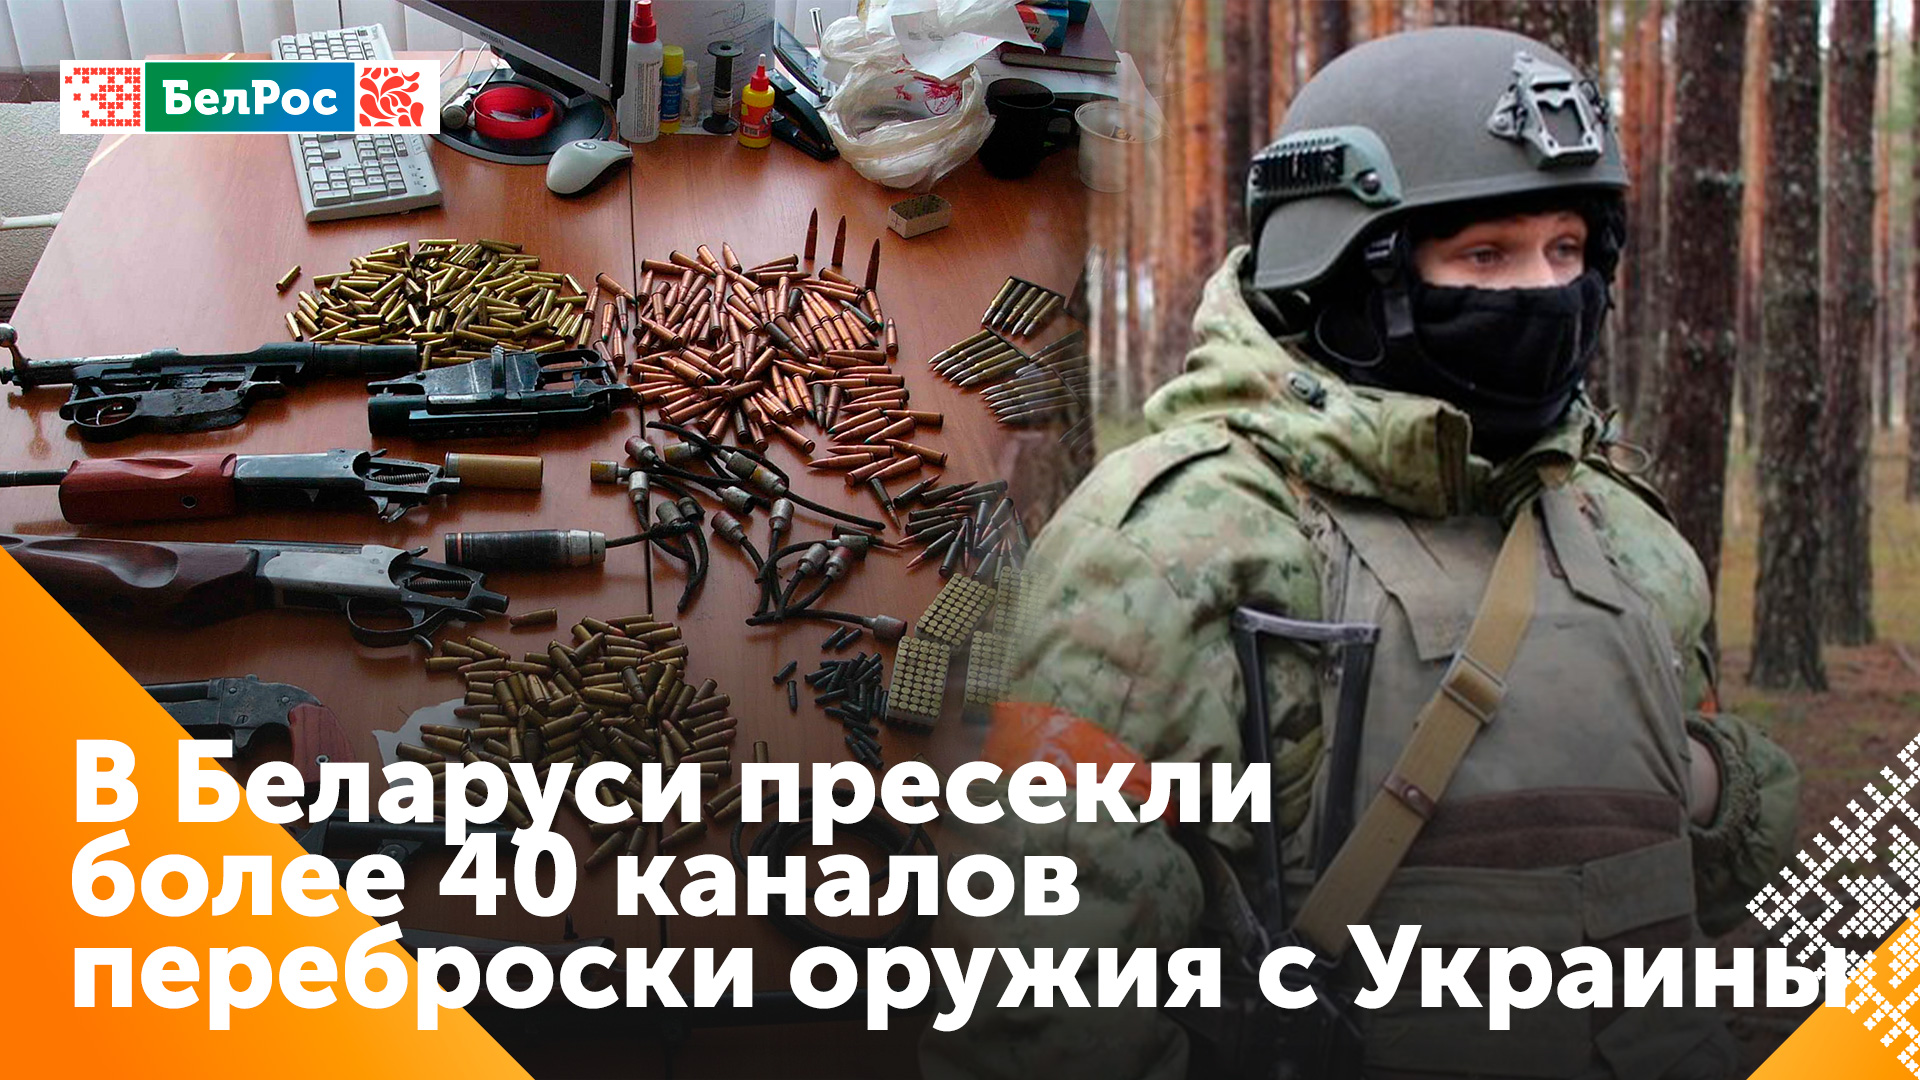 В Беларуси за этот и прошлый год было пресечено 40 каналов перевозки оружия и взрывчатки